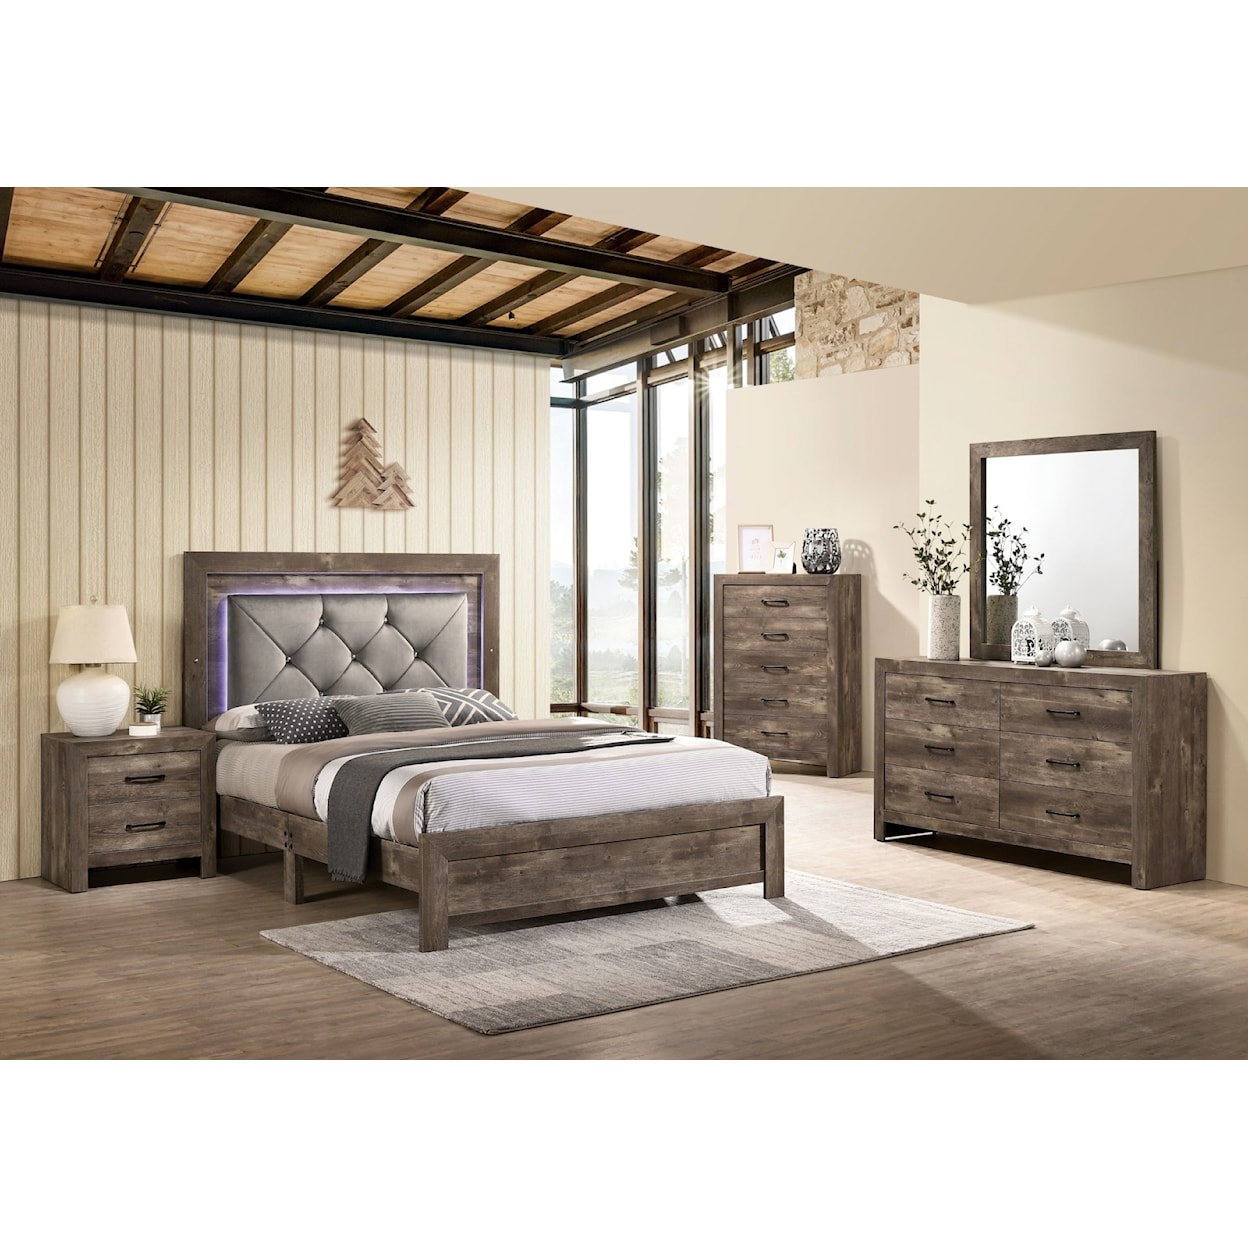 Furniture of America Larissa Queen Bed